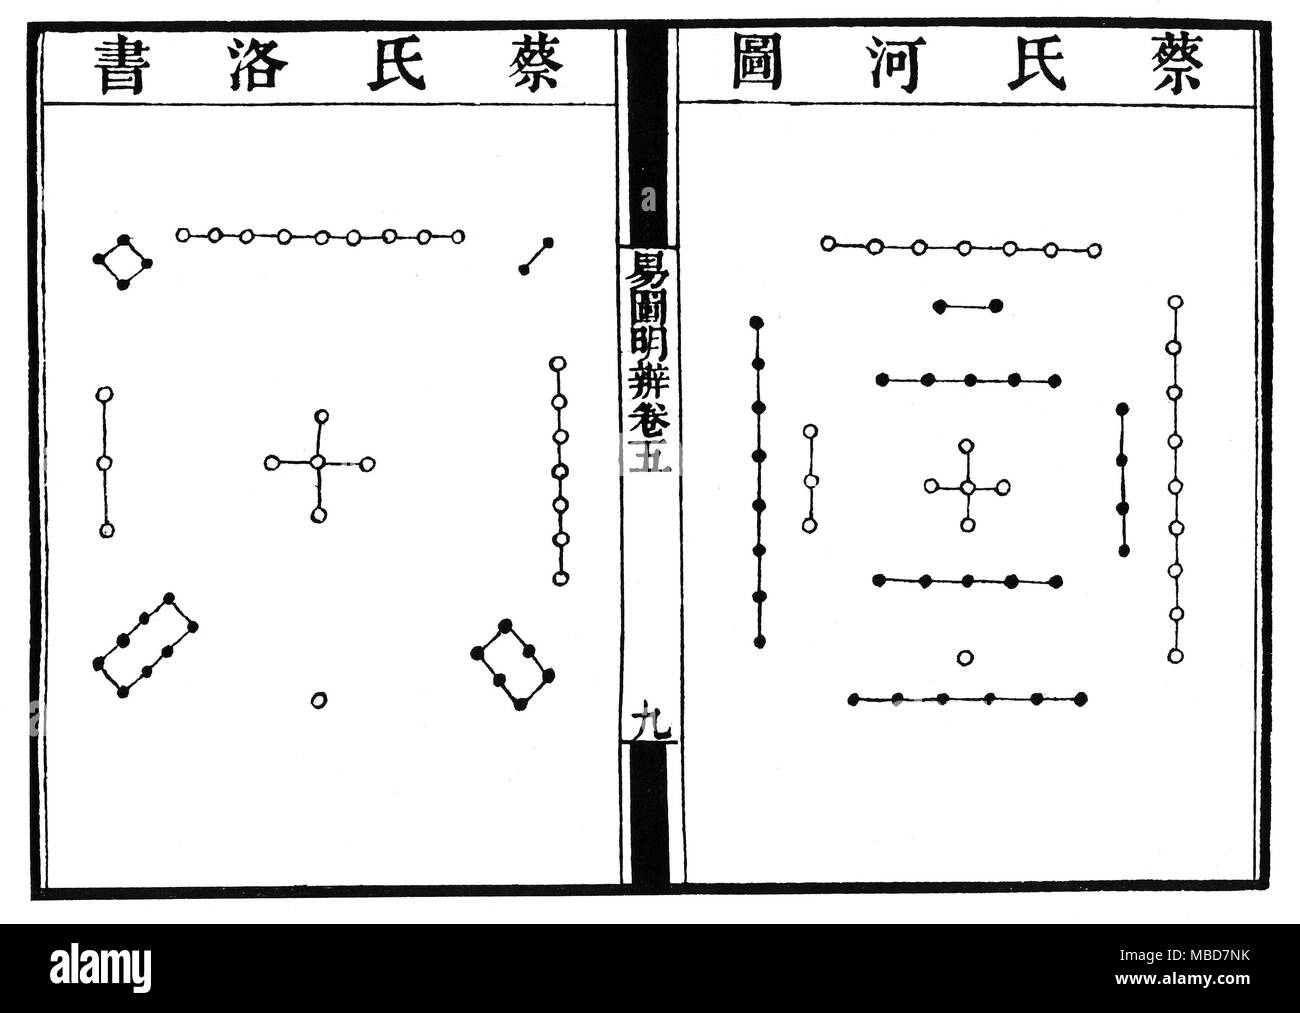 I Ching - SCHALTPLÄNE - magische Quadrate - Spiralen eine Doppelseite aus dem 18. Jahrhundert blockbook Version des Buches von Veränderungen bzw. I Ching. Die beiden Diagramme auf diesen Seiten stellen die Ältesten Diagramme - die Numerologischen und kosmologische Anordnung der Trigramme, oder die Energien vertreten durch die trigramme beziehen sich auf die fünf Elemente der chinesischen System. Das Diagramm auf der rechten Seite (der erste der beiden, in Bezug auf die chinesische Methode des Schreibens) ist wie der Fluss, der auf einer Spirale Numerologie beruht, von 1 bis 10, bei der die ungeraden Zahlen von 0 vertreten sind bekannt, Stockfoto